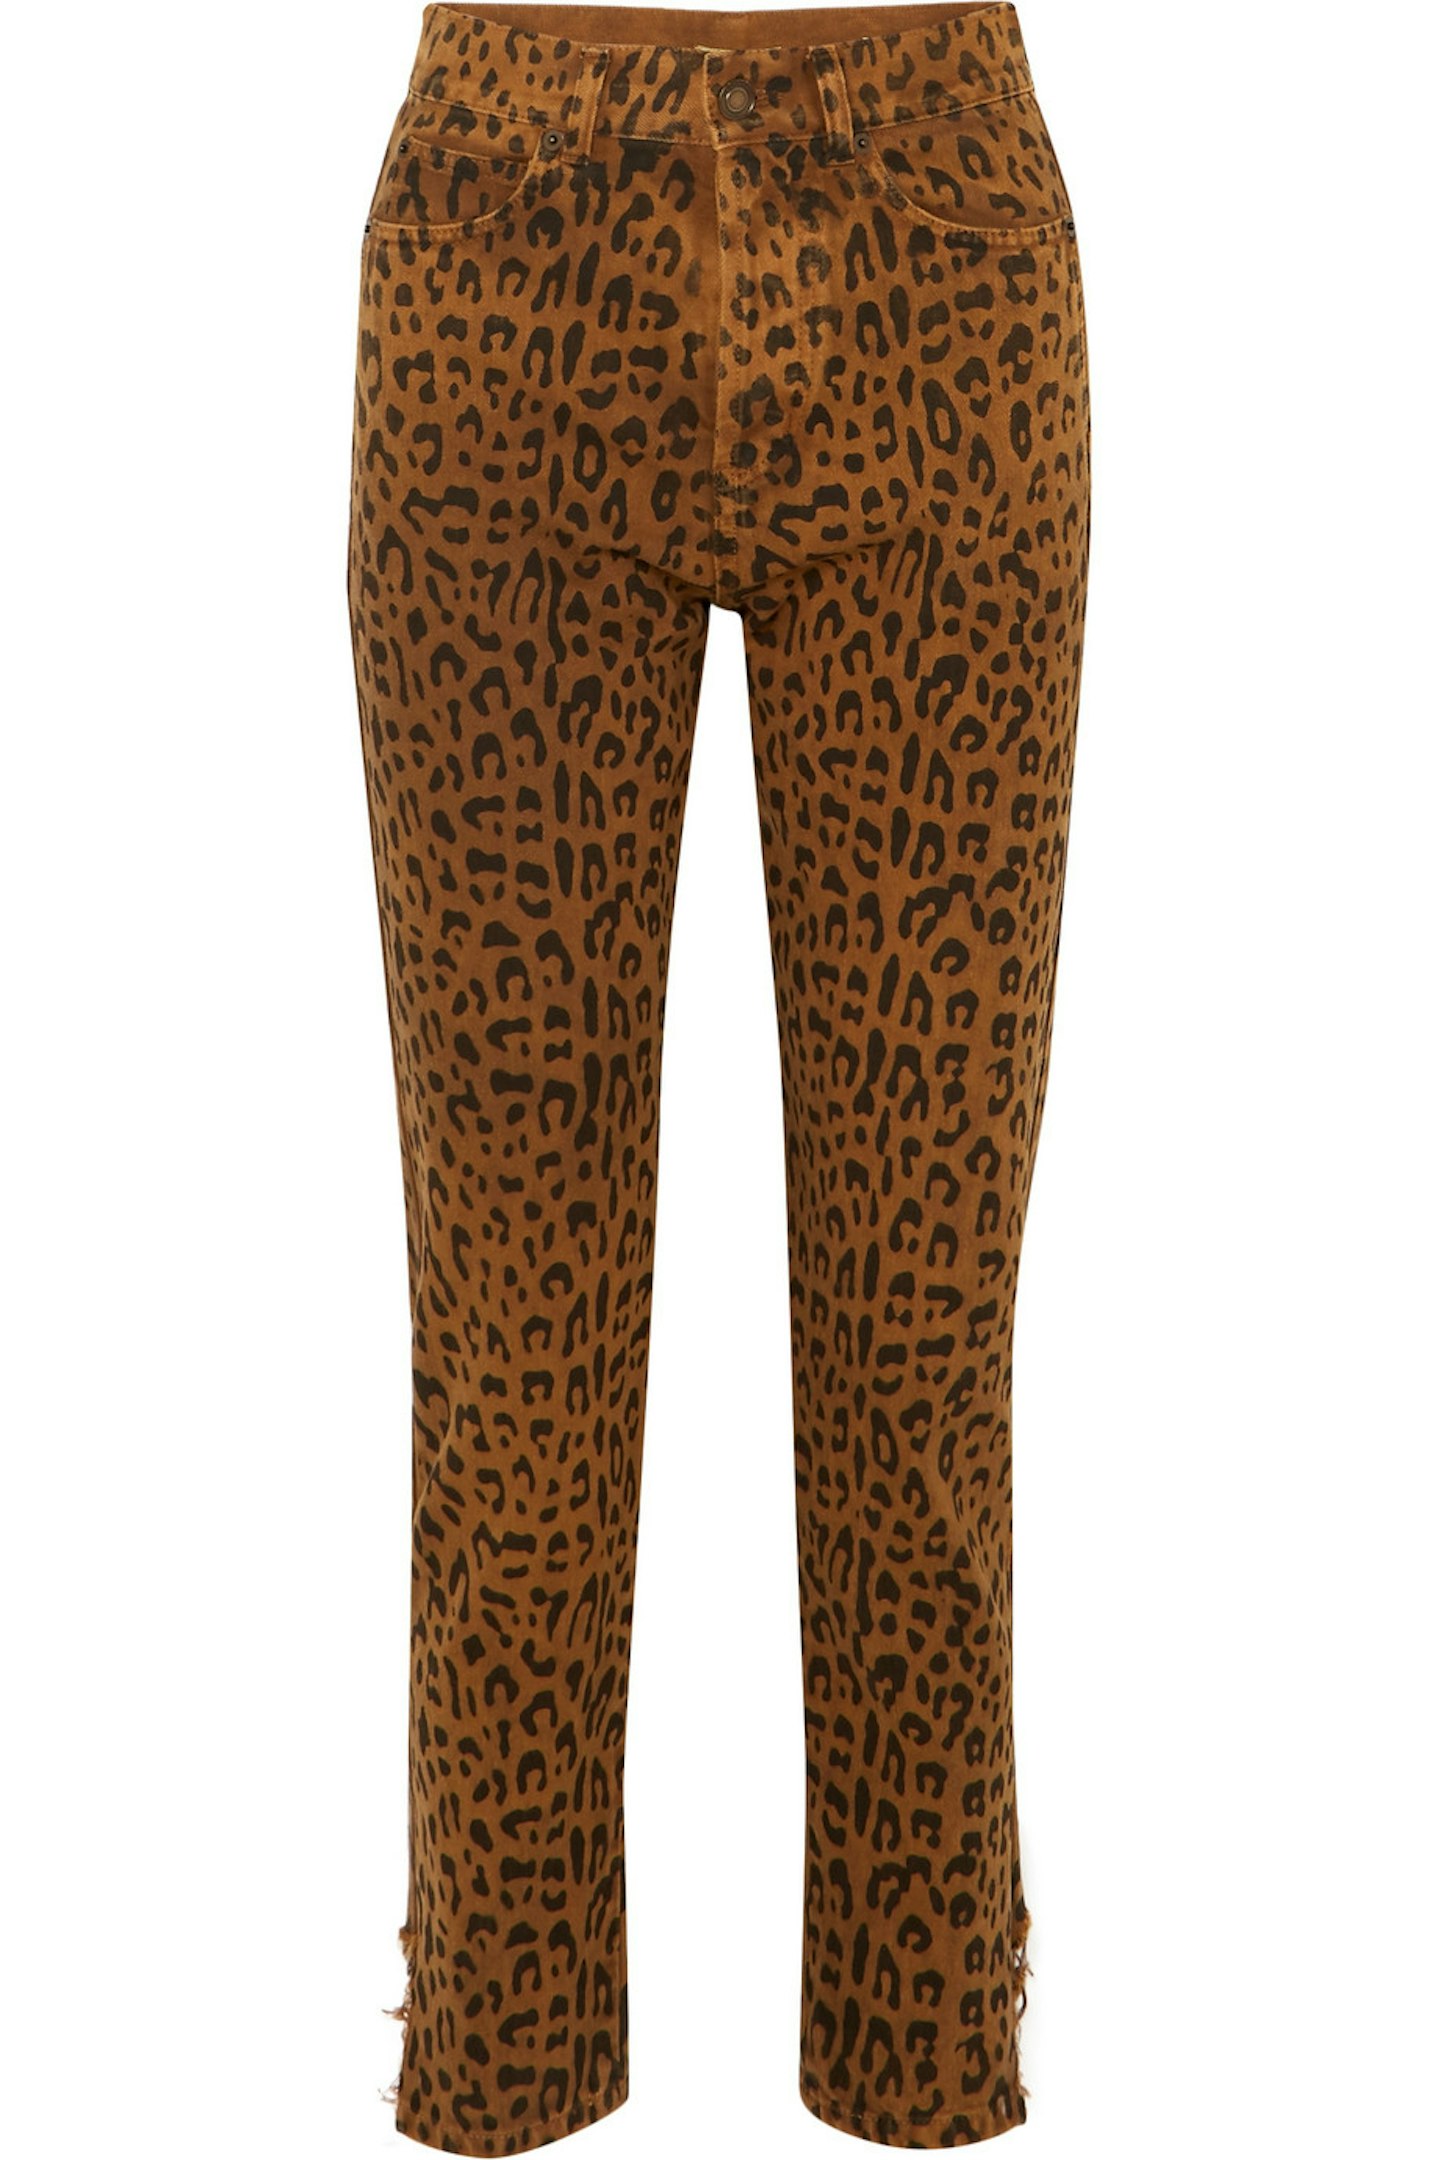 Saint Laurent, Leopard-Print High-Rise Slim-Leg Jeans